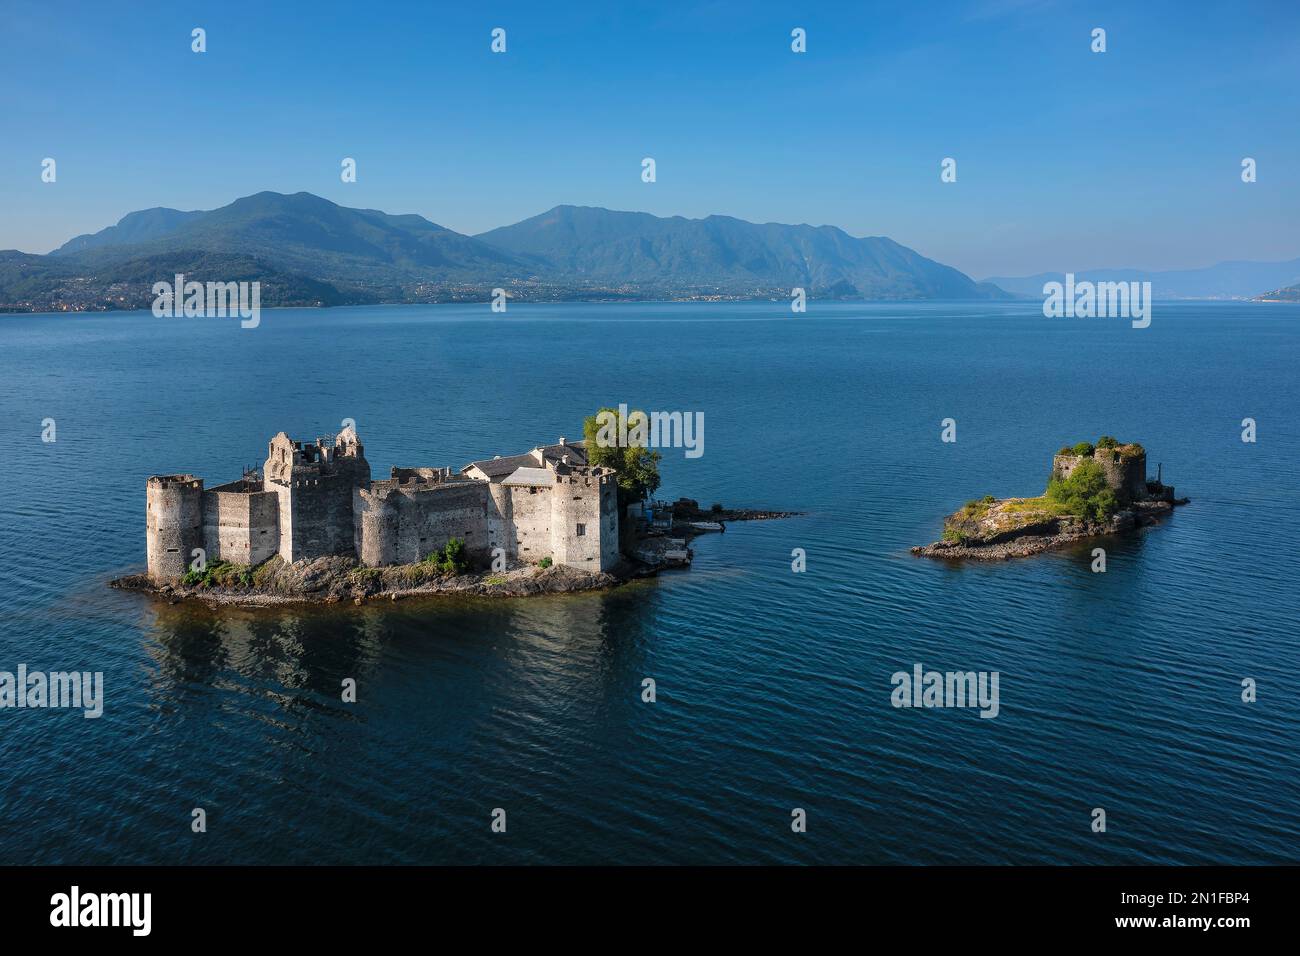 Castelli di Cannero, Cannero Riviera, Lago Maggiore, Piedmont, italienische Seen, Italien, Europa Stockfoto